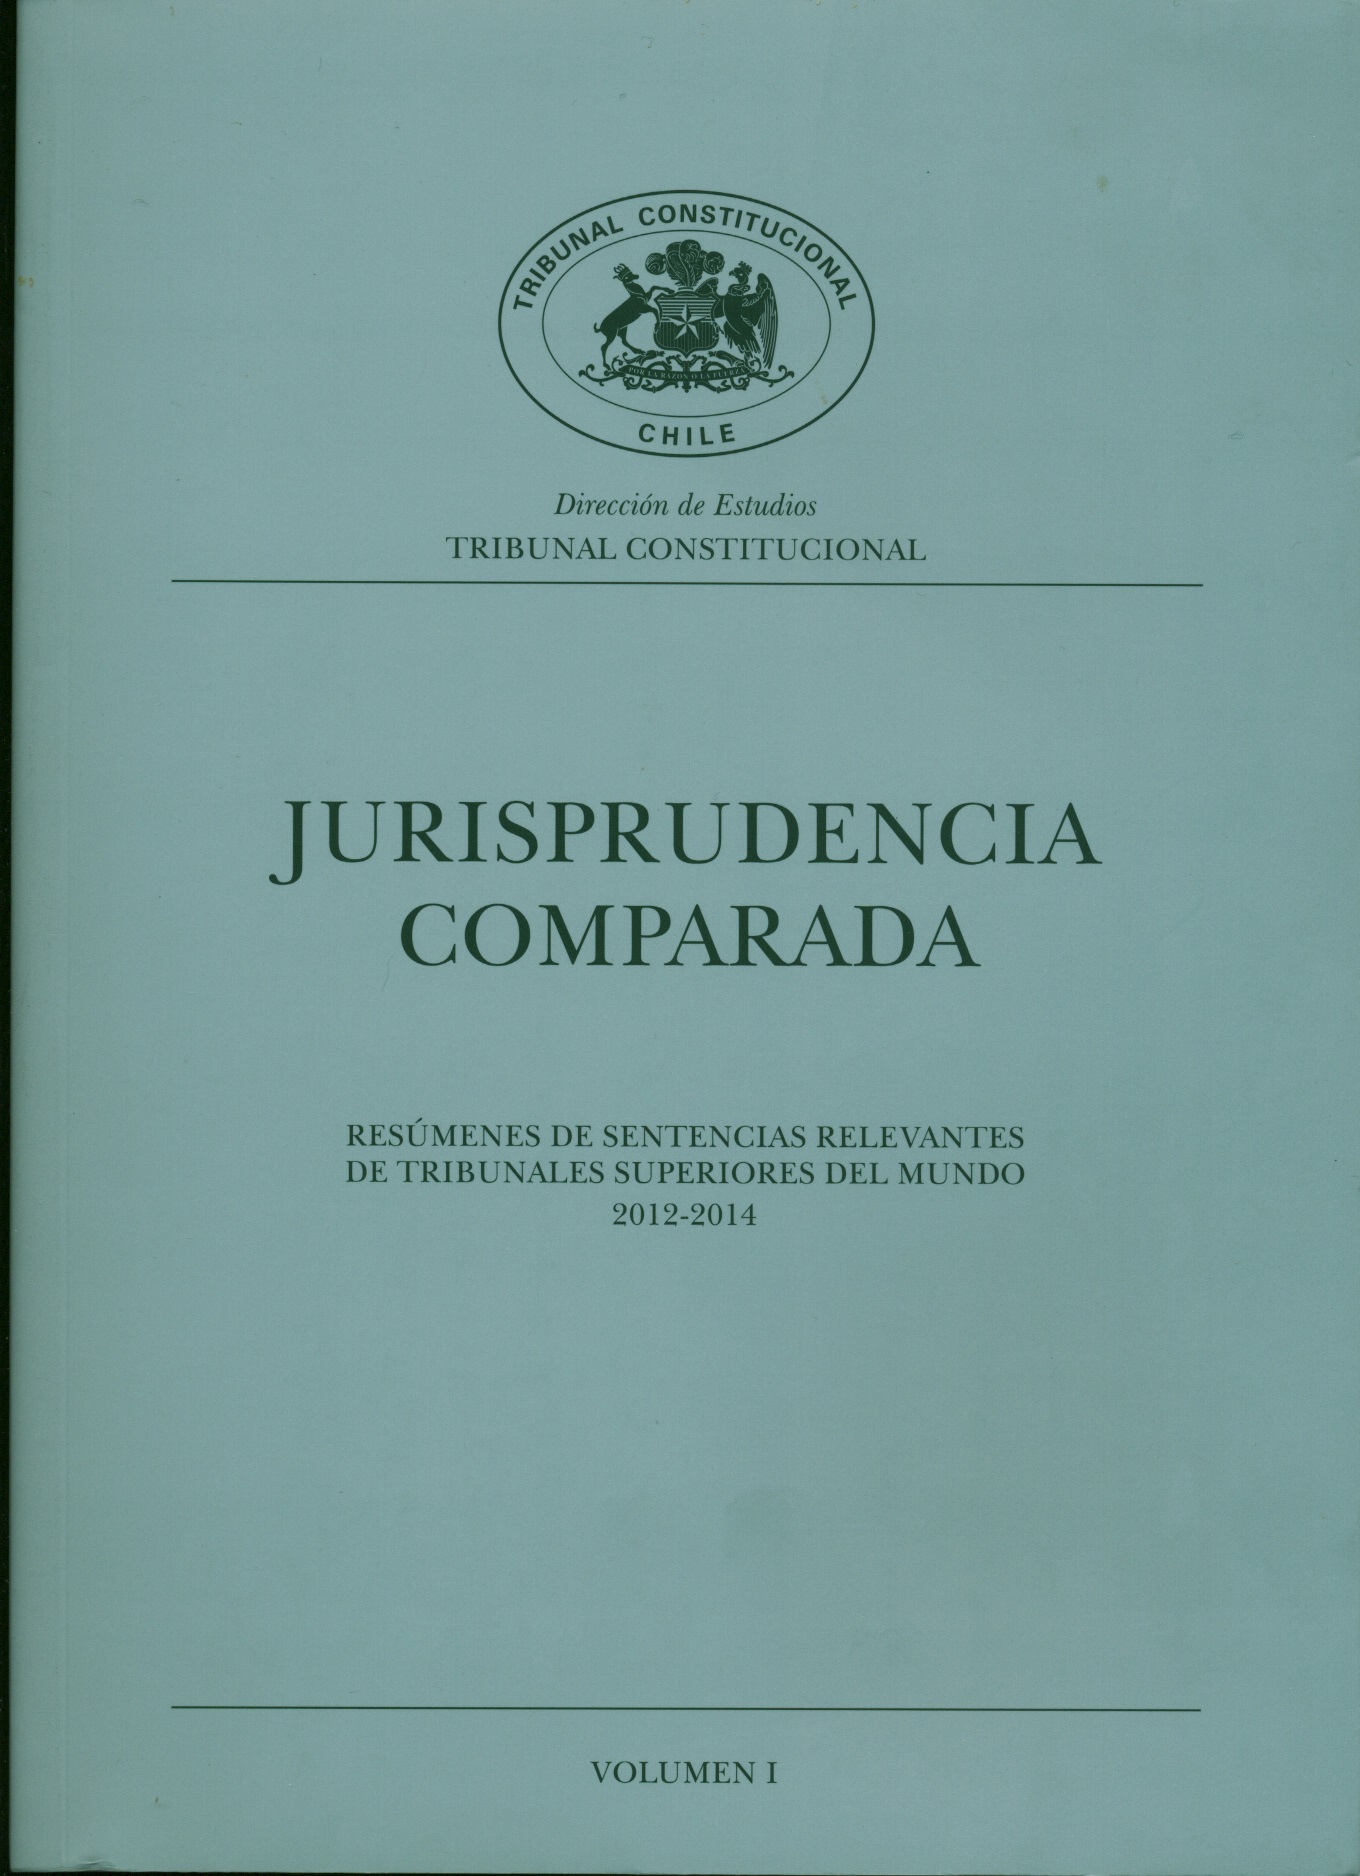 Jurisprudencia comparada. Resúmenes de sentencias relevantes de tribunales superiores del mundo 2012-2014